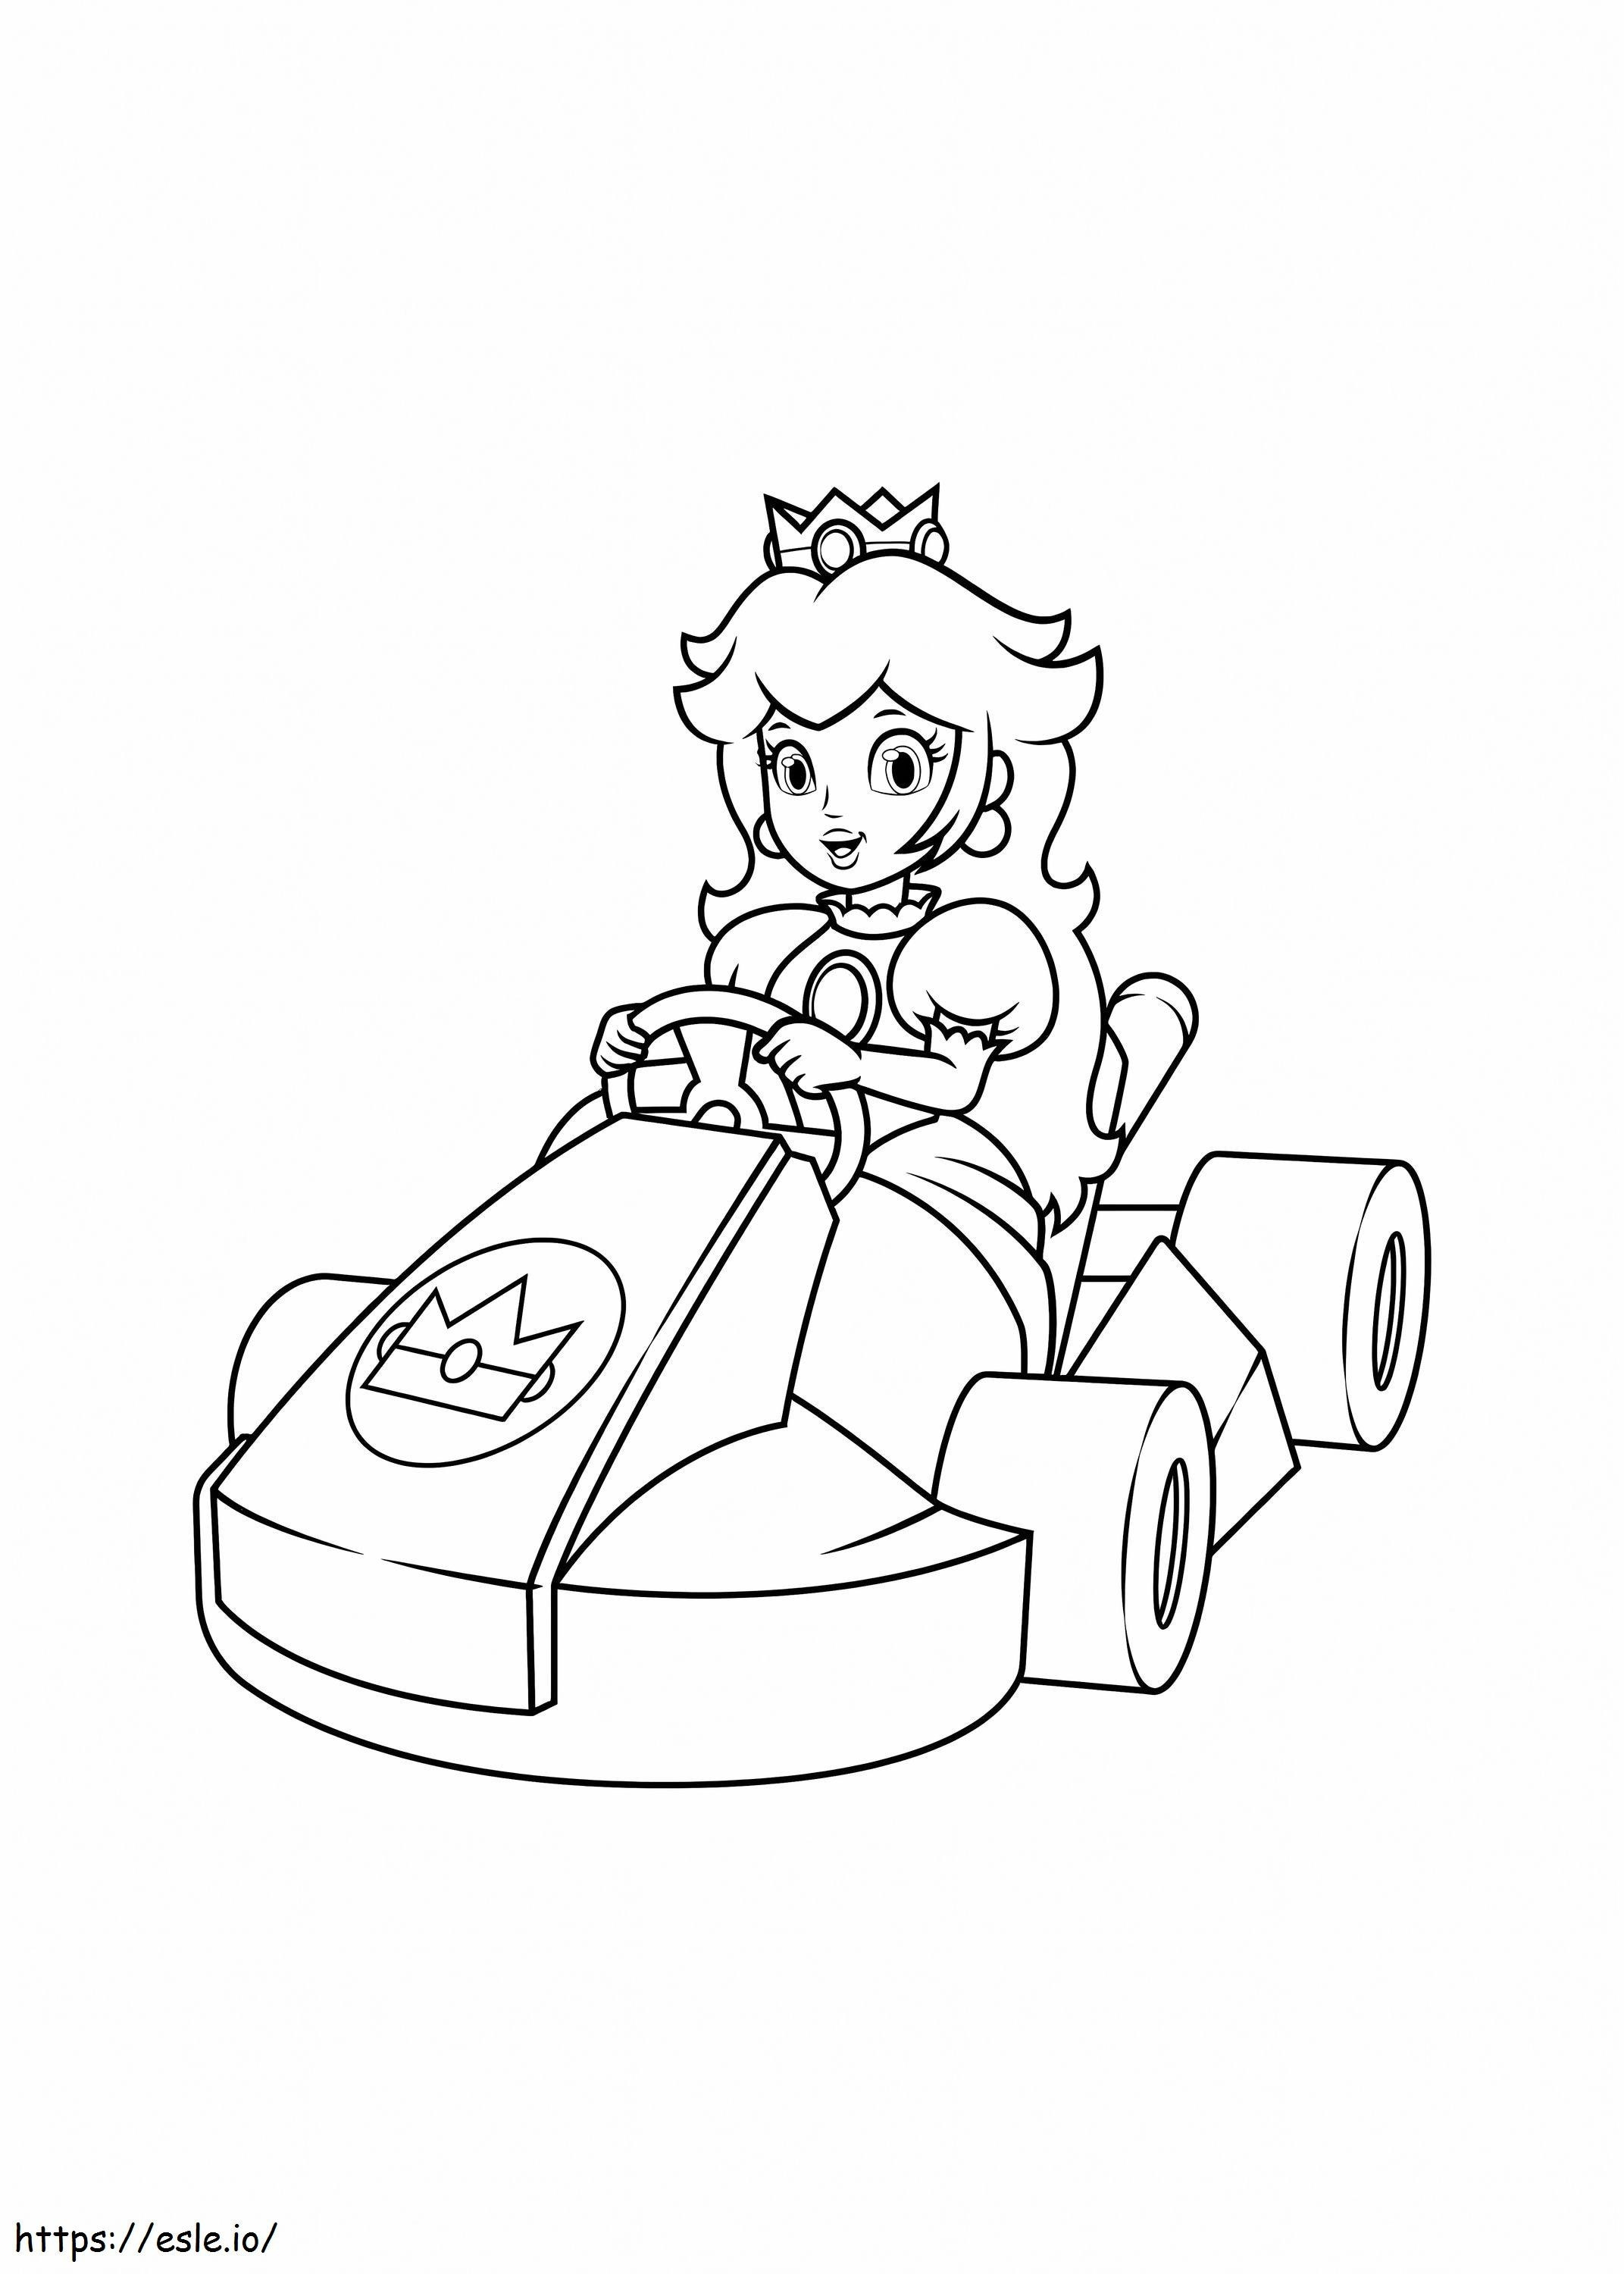 Prenses Peach'in Yarış Arabası boyama